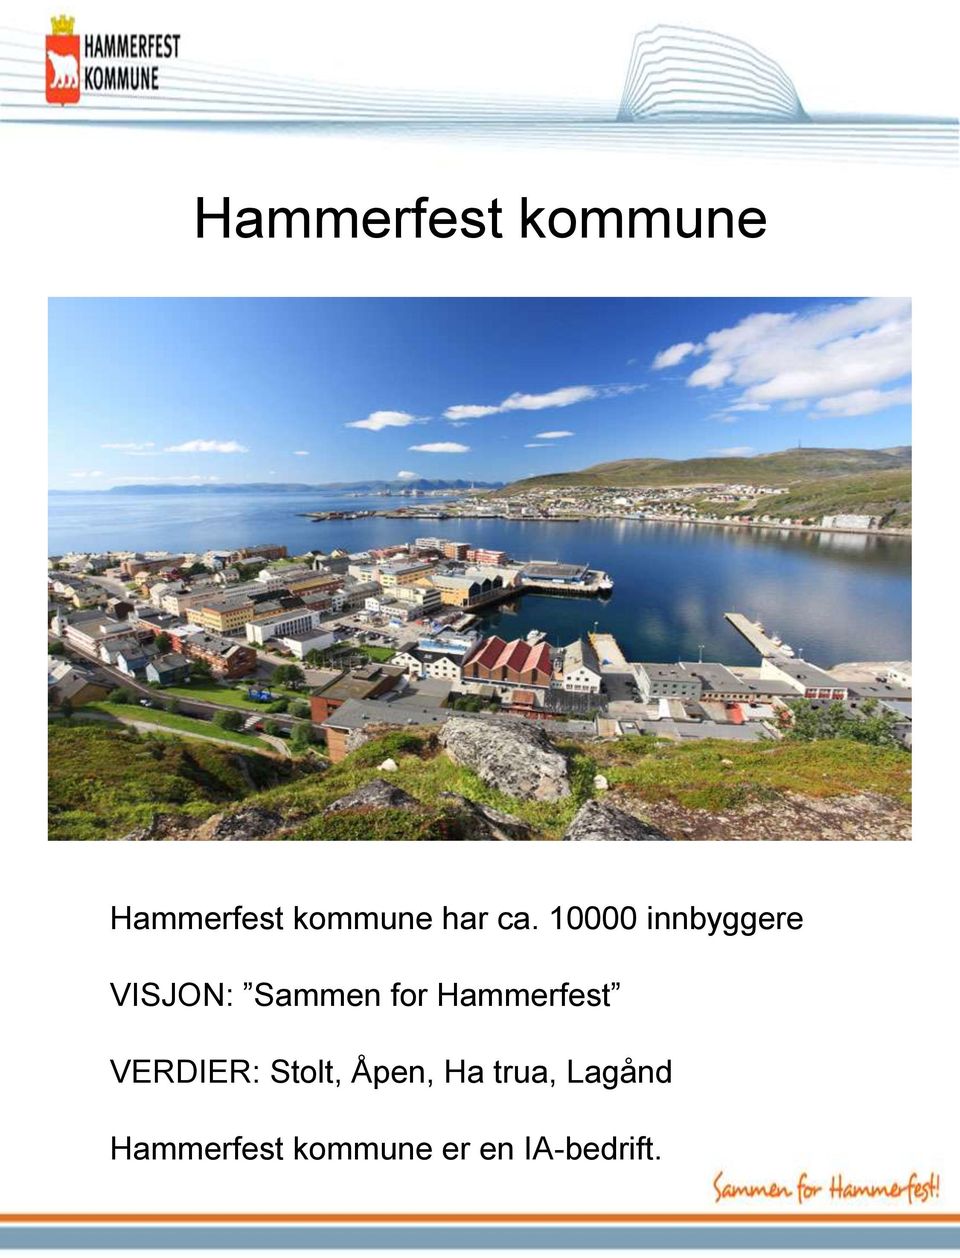 Hammerfest VERDIER: Stolt, Åpen, Ha trua,